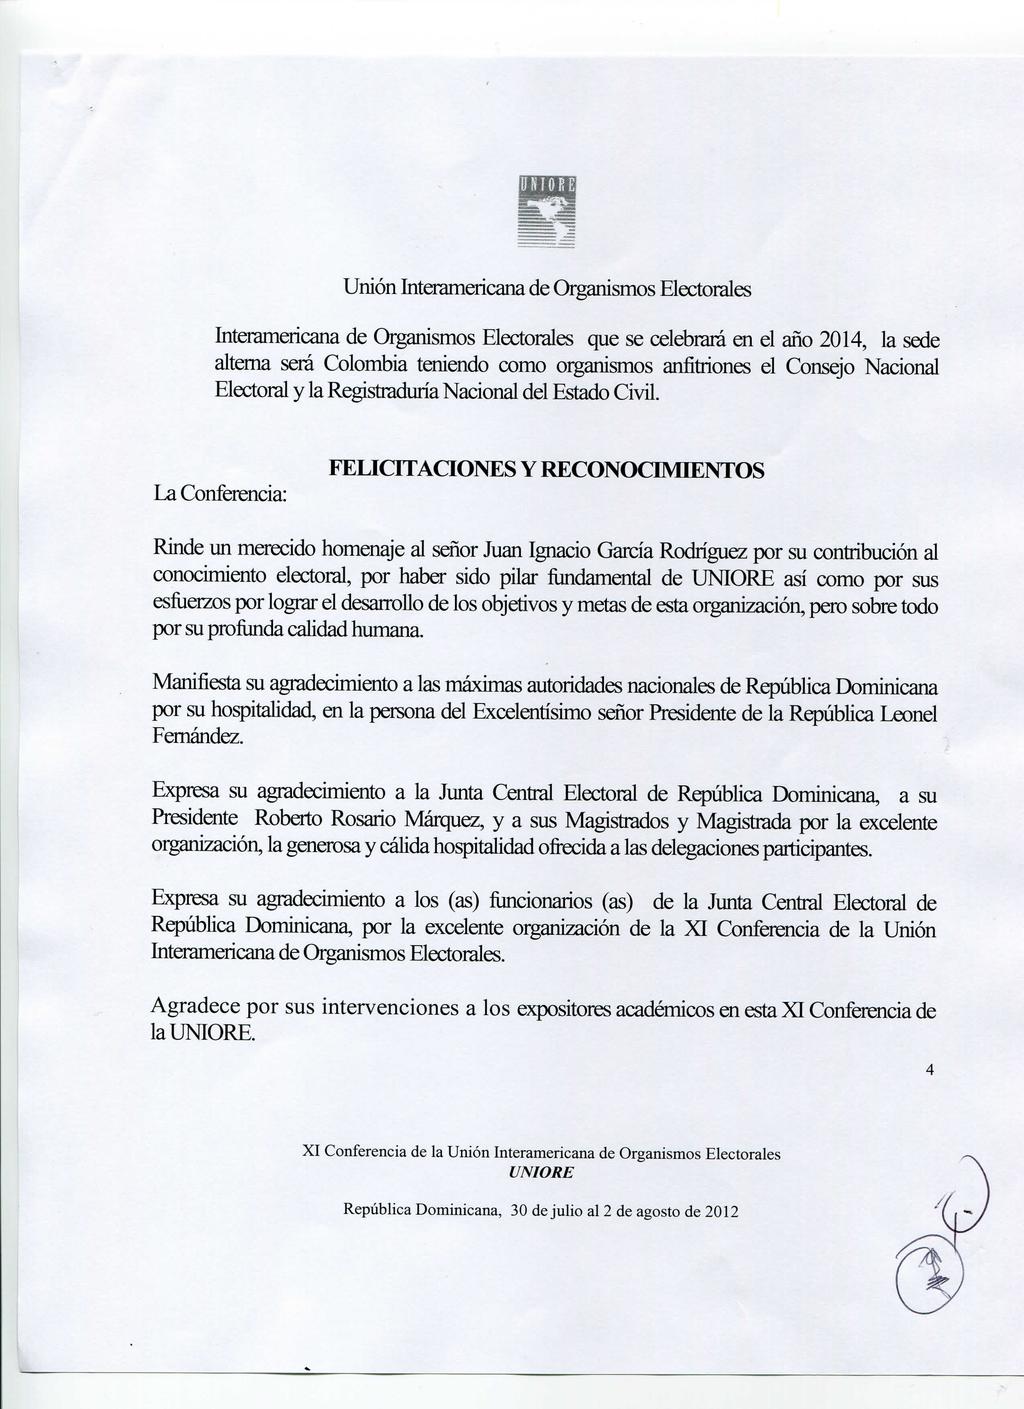 Interamericana de Organismos Electorales que se celebrará en el año 2014, la sede alterna será Colombia teniendo como organismos anfitriones el Consejo Nacional Electoral y la Registraduría Nacional